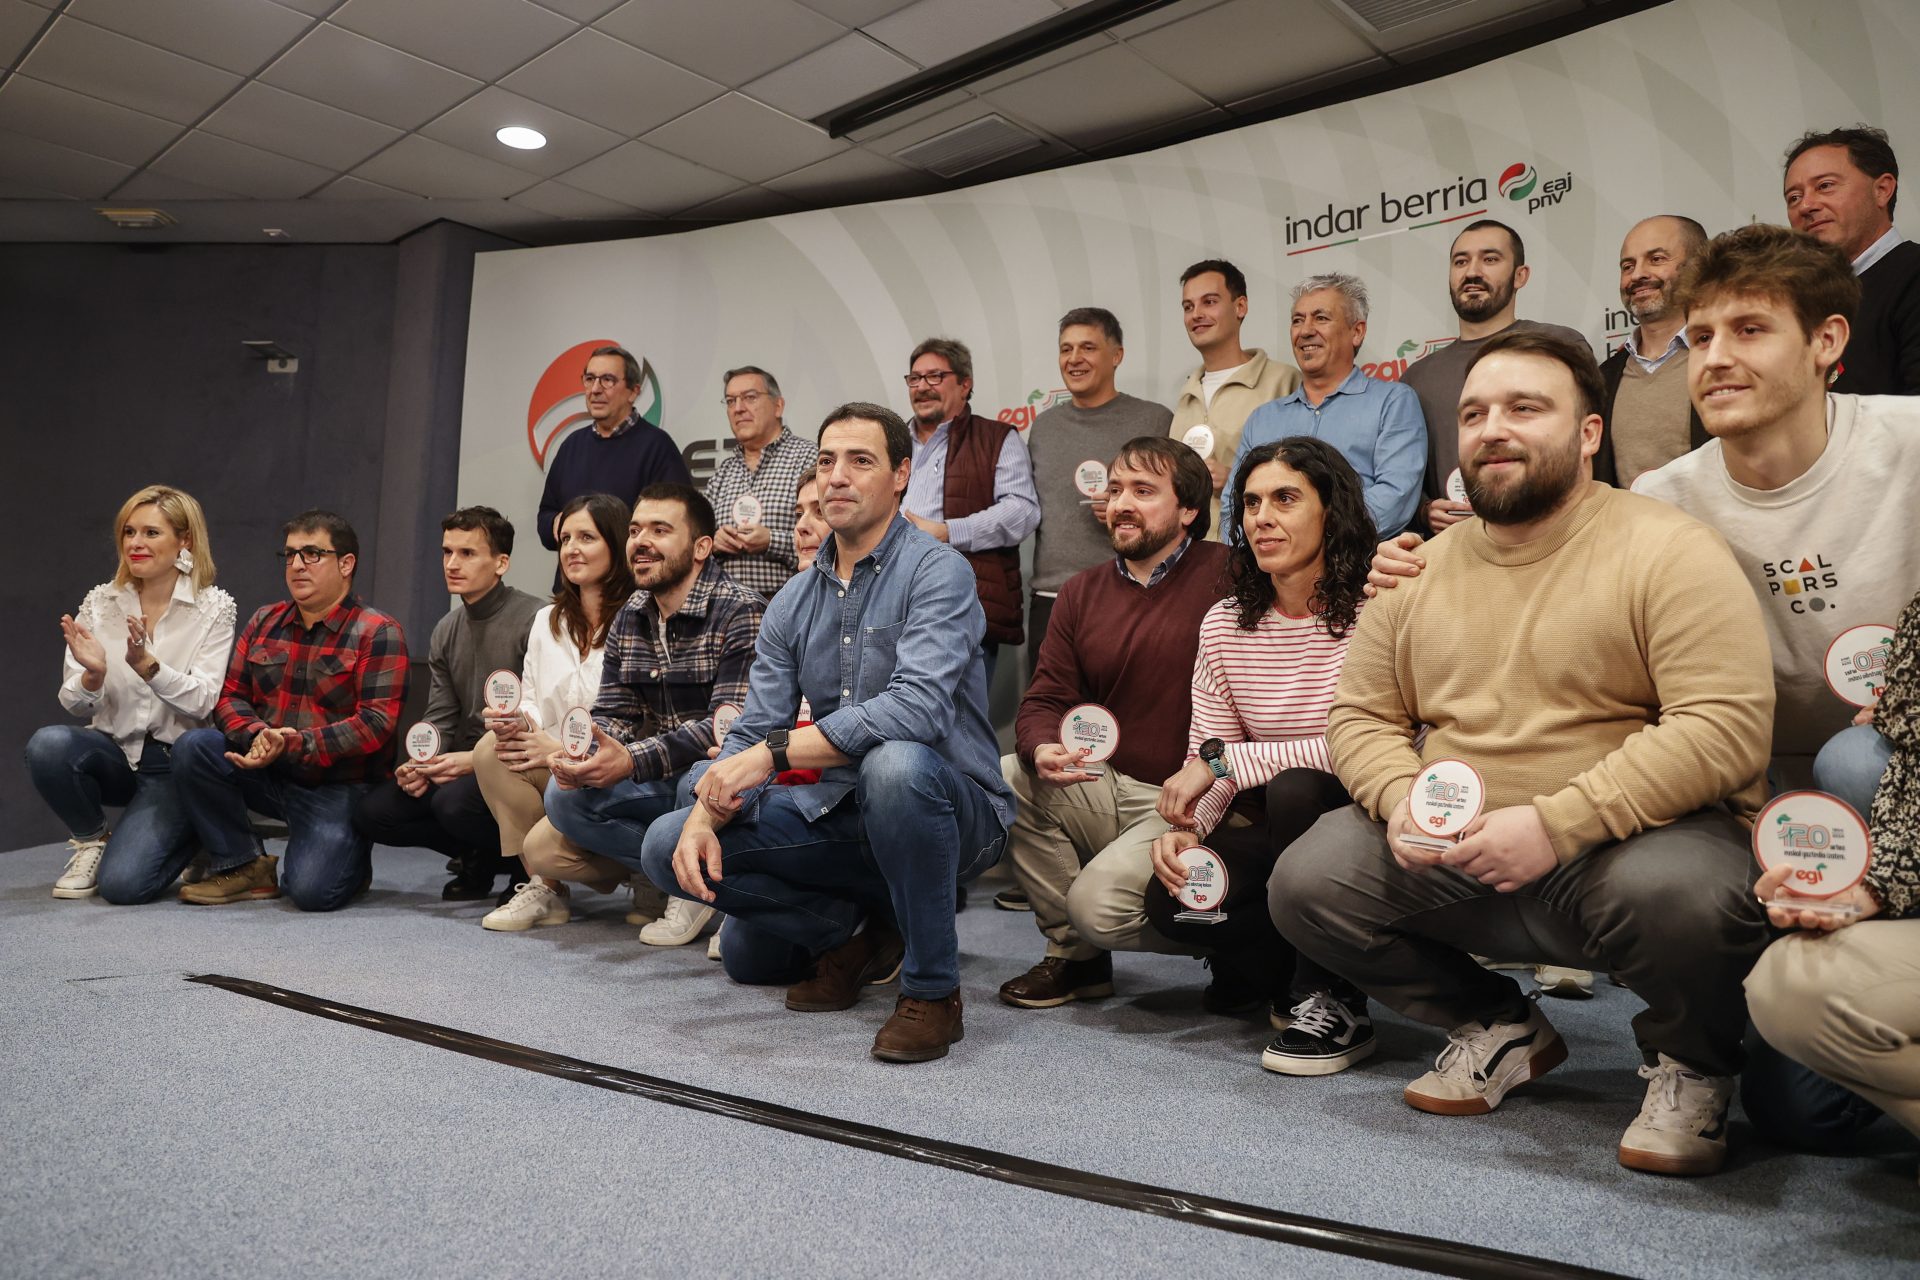 Pradales: El PNV necesita jóvenes inconformistas y comprometidos con Euskadi